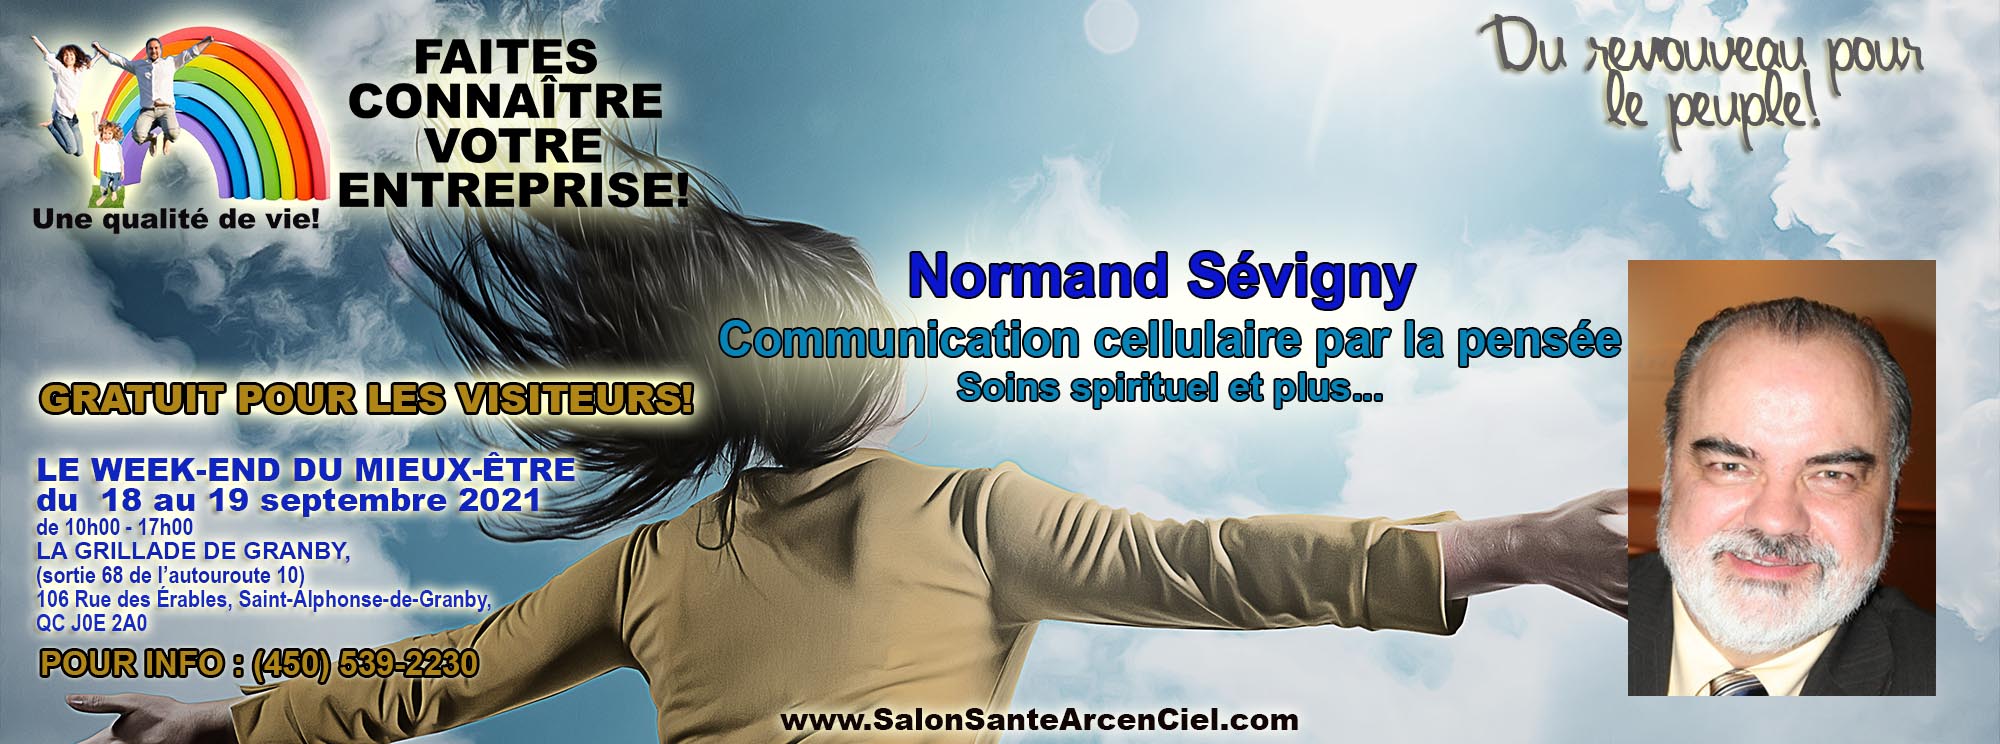 32 Normand Sevigny communication cellulaire EXPOSANTS PAGE PRO NO1  Salon Sante Arc enCiel 18 19 Septembre2021COPY